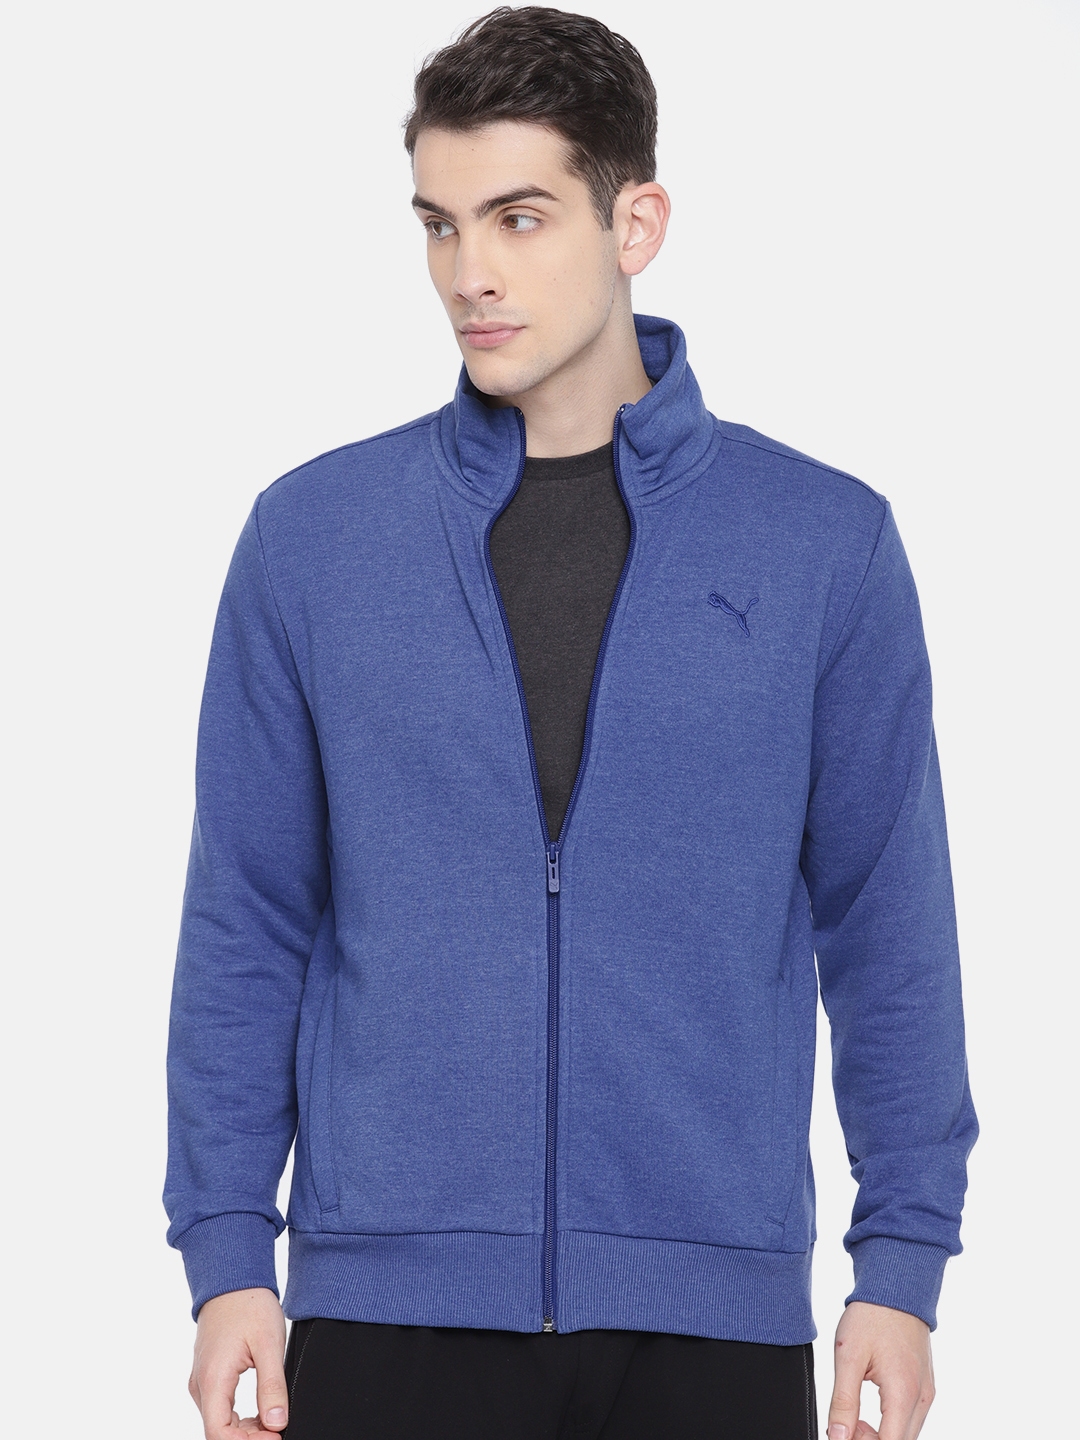 puma blue jacket